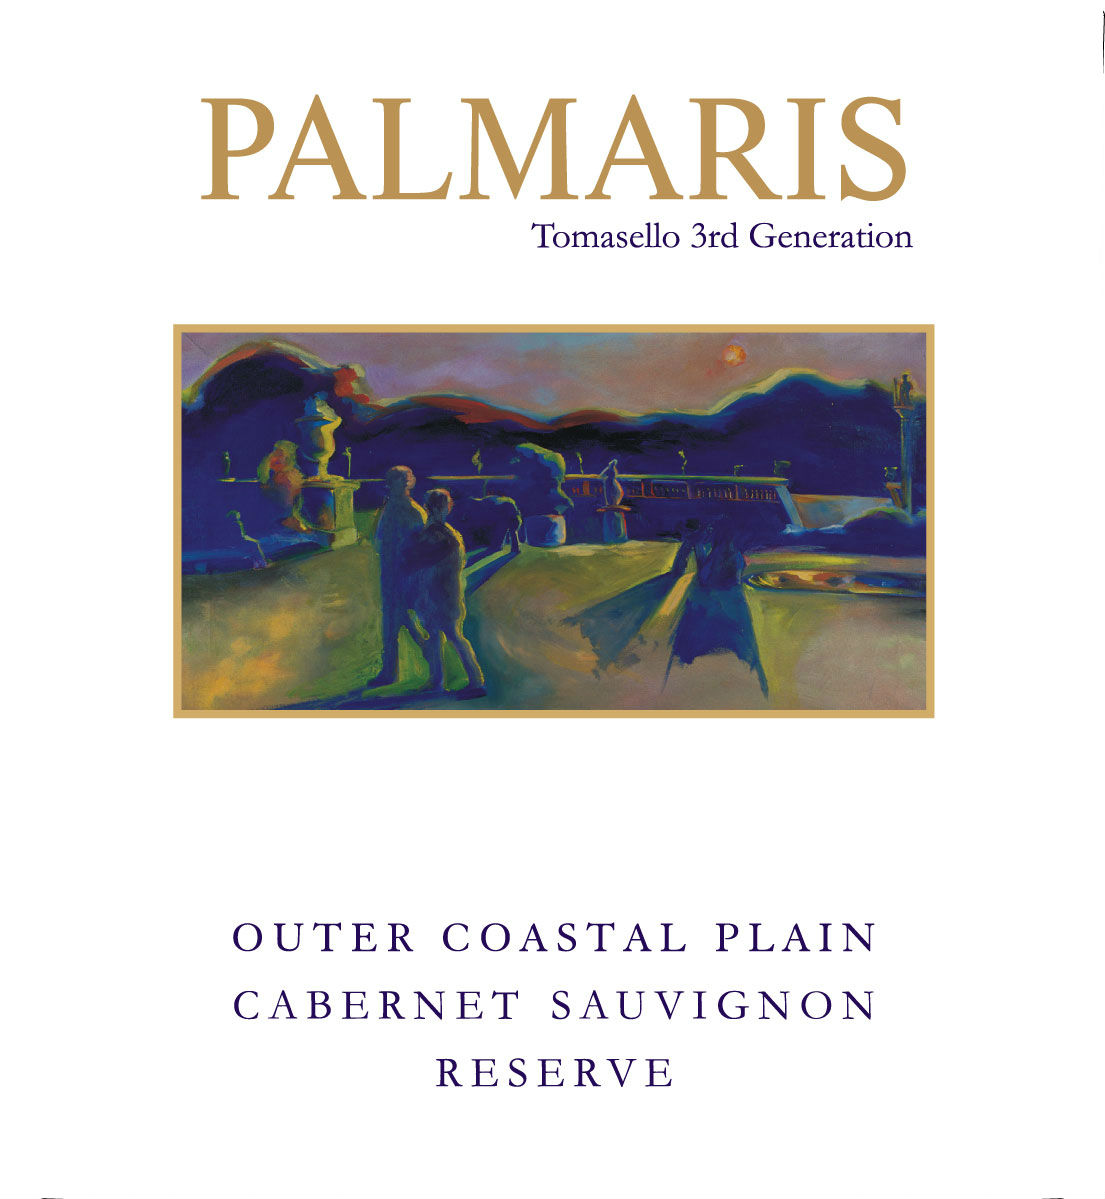 Product Image for Palmaris 2013 Outer Coastal Plain Cabernet Sauvignon Reserve